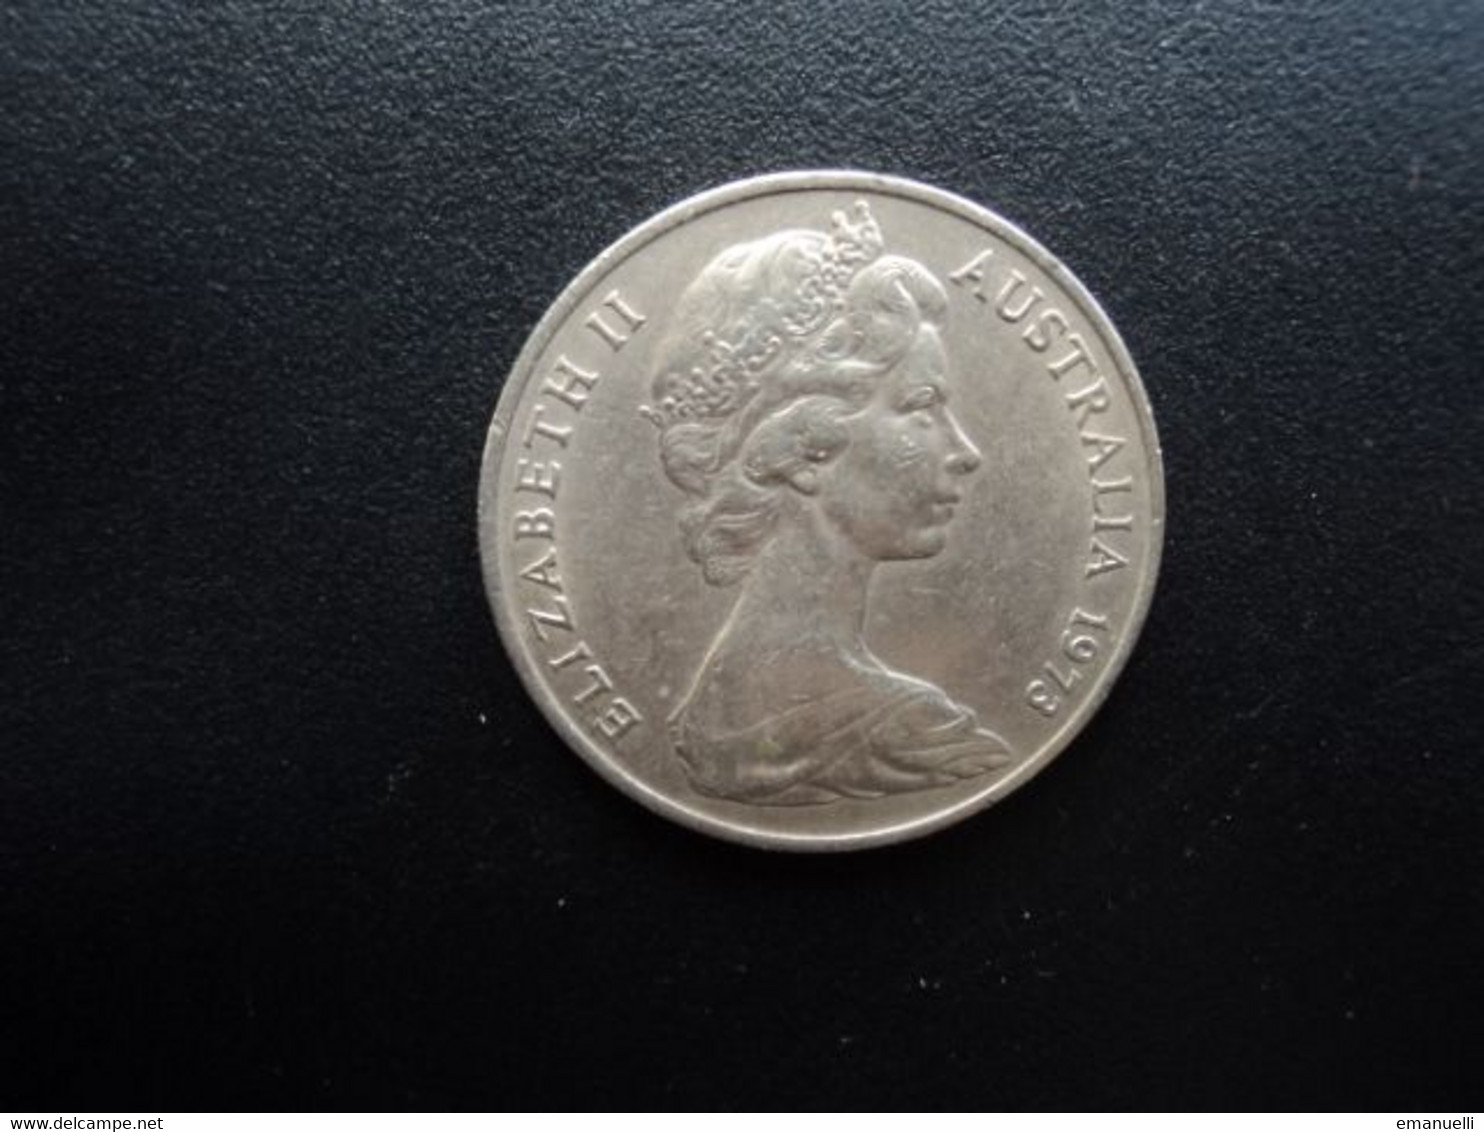 AUSTRALIE * : 20 CENTS   1973     KM 66      SUP - 20 Cents